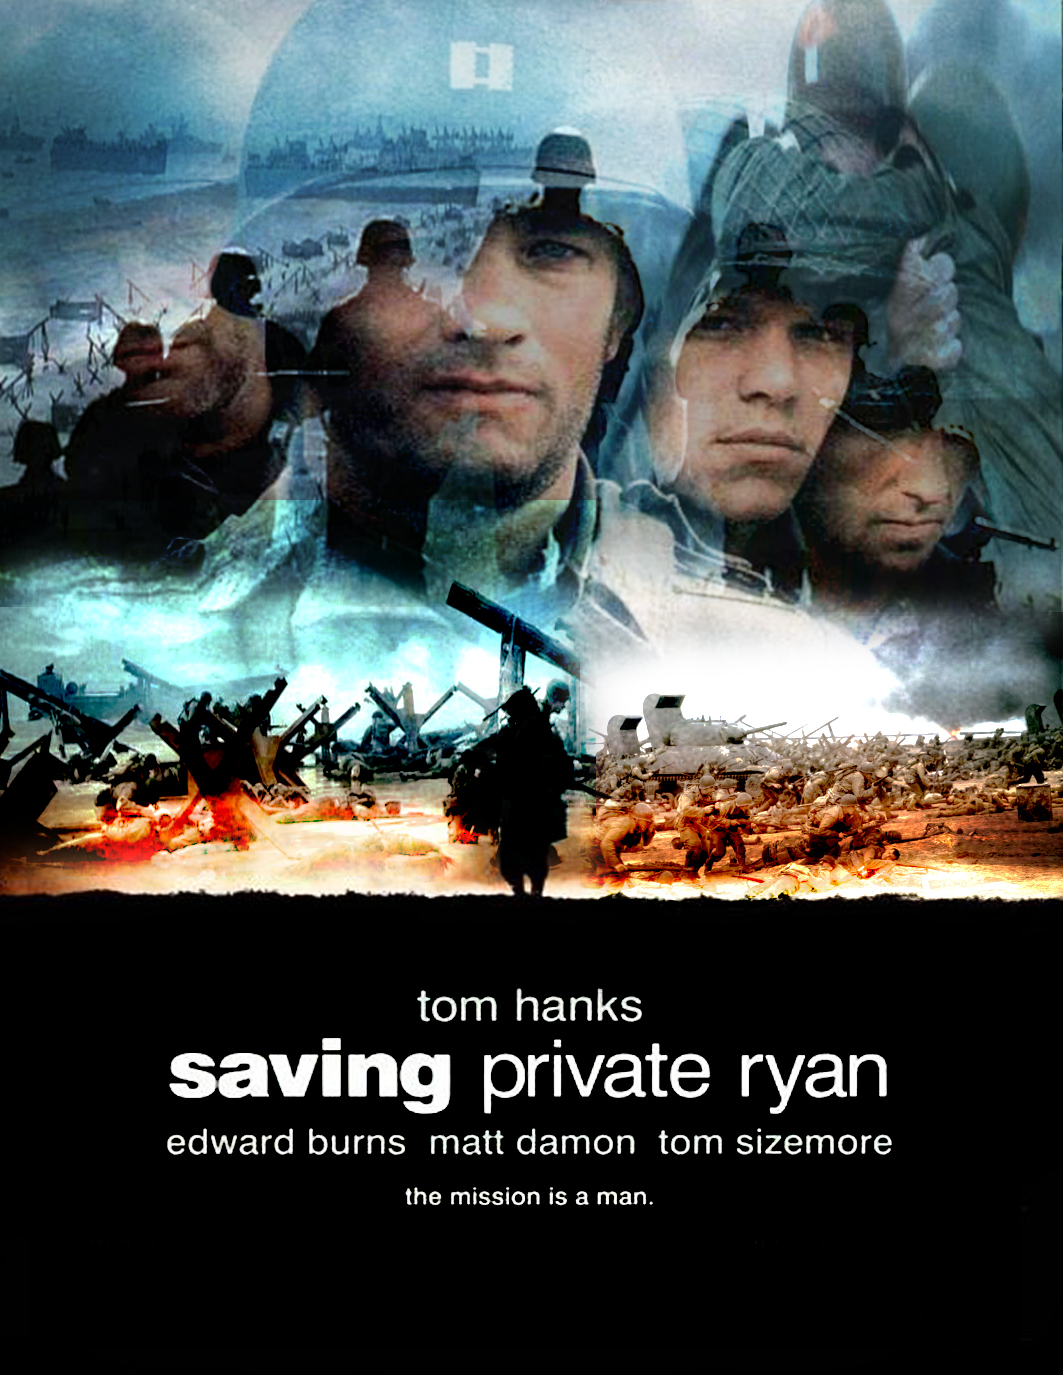 Saving-Private-Ryan